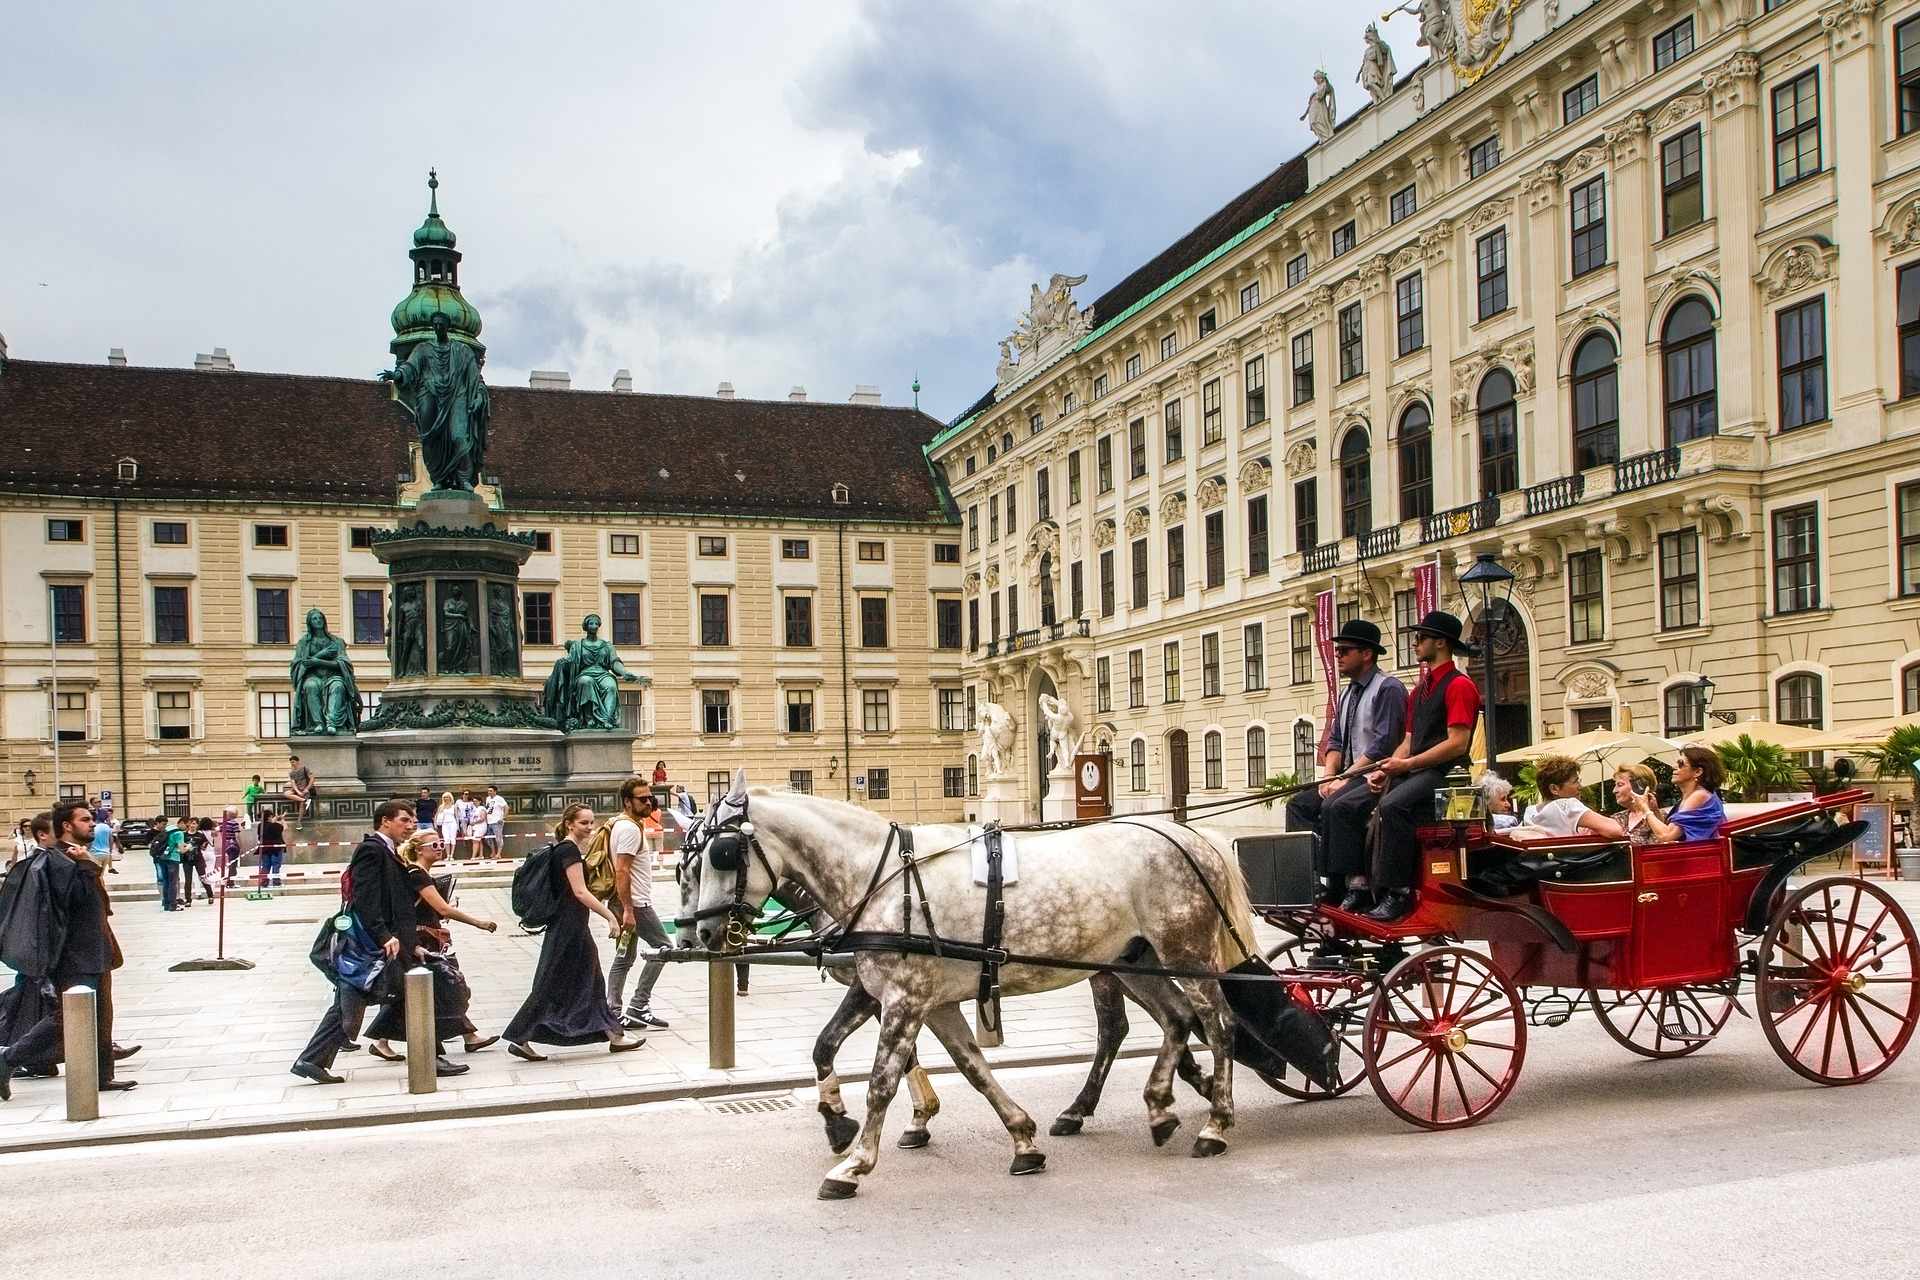 Wien Vienna